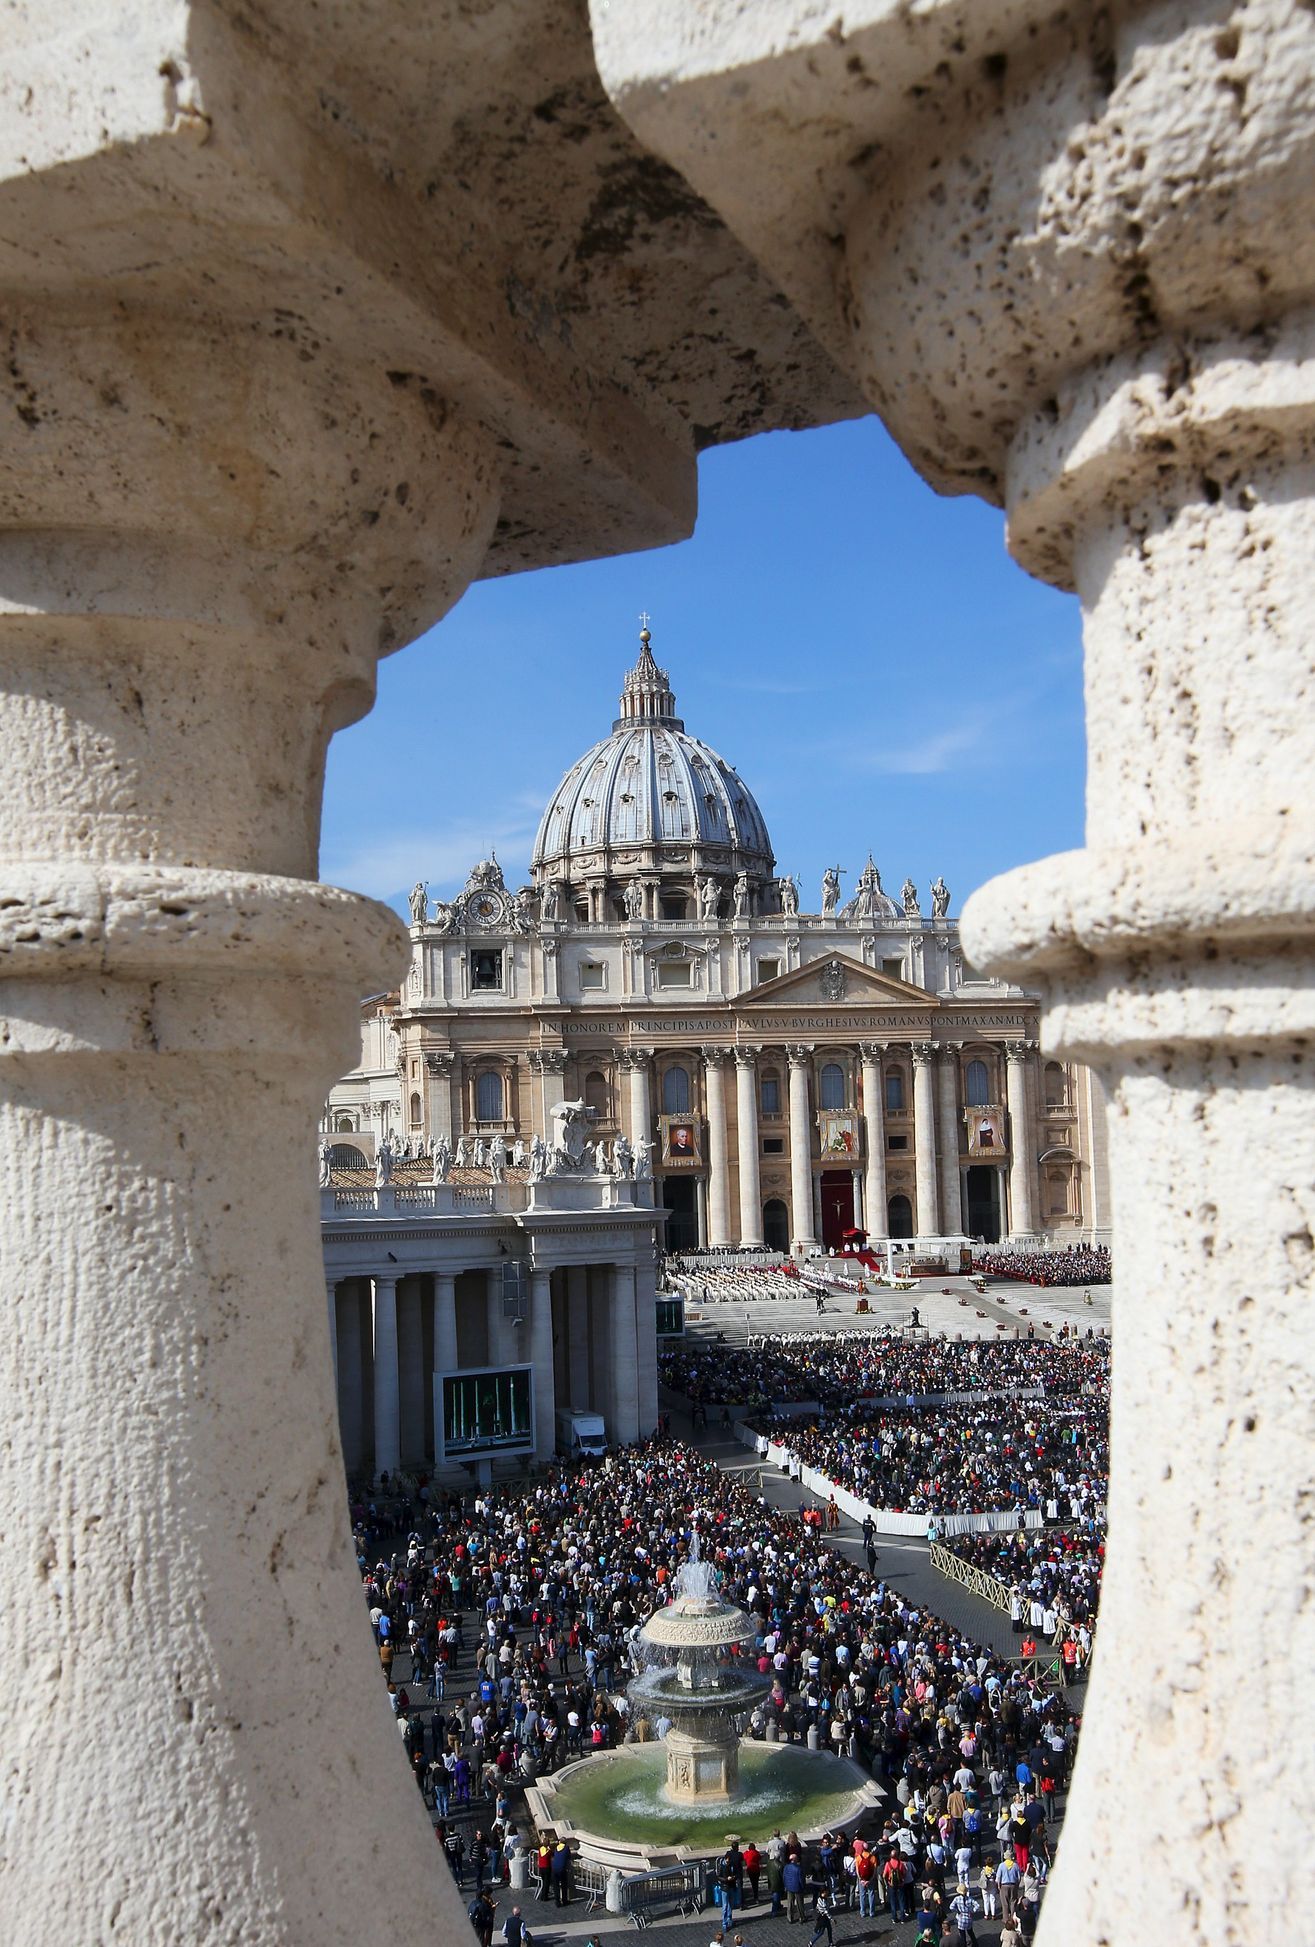 Der Vatikan ändert seine Anlagepolitik komplett.  Das Geld fließt nur in die „richtigen“ Projekte